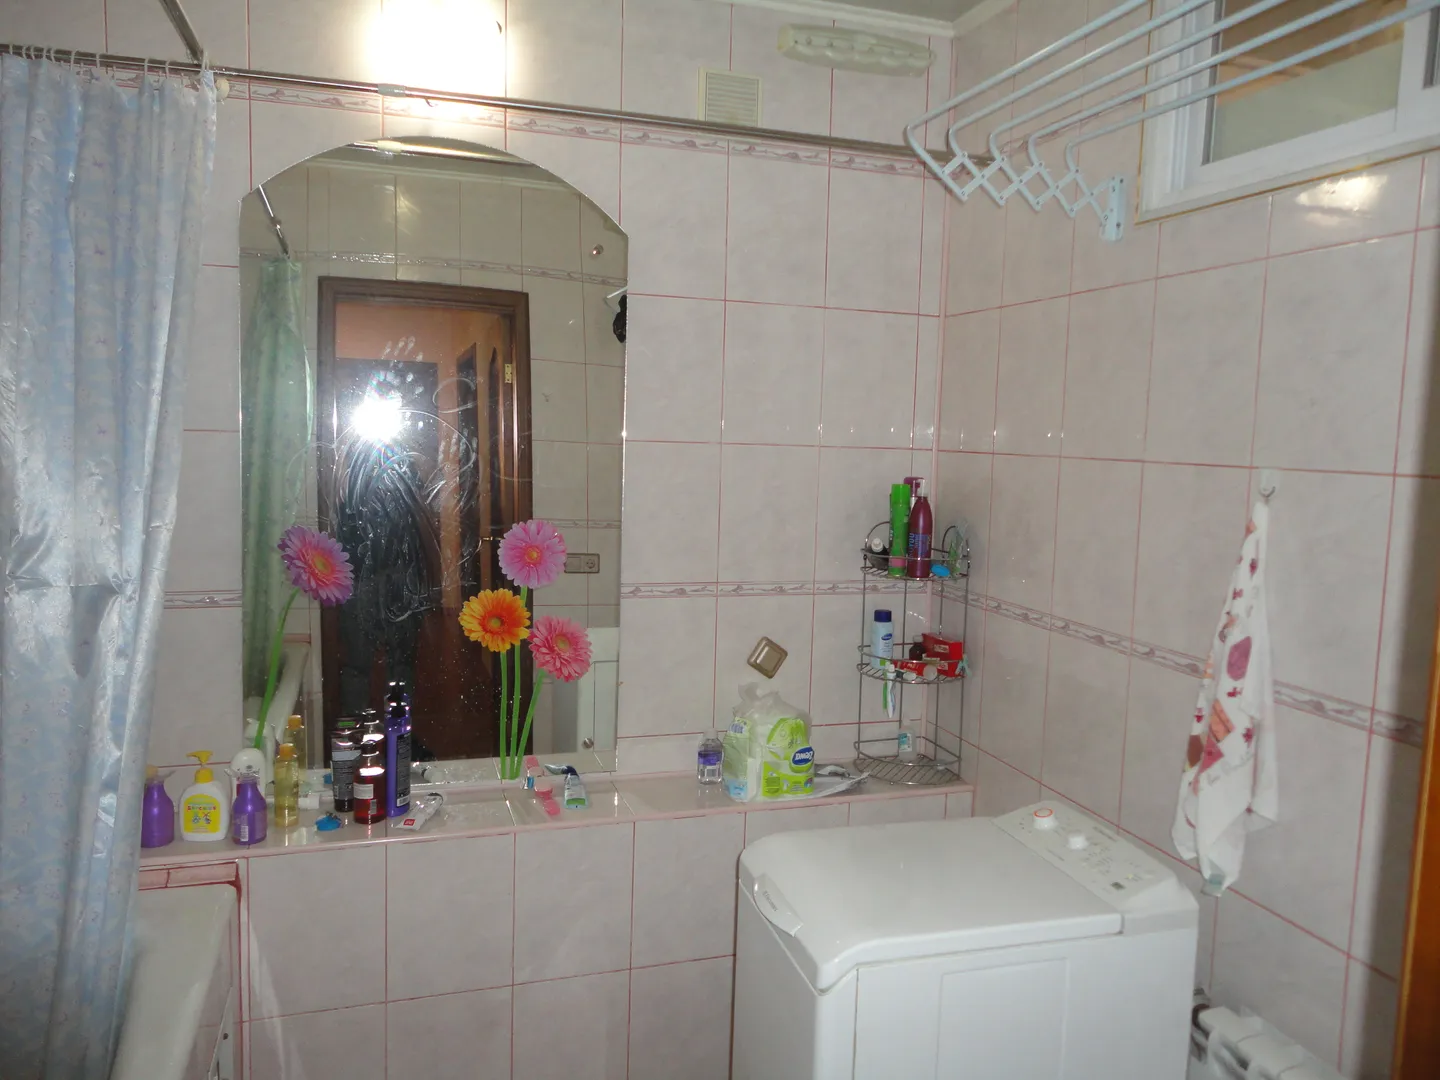 Просторная ванная комната с большим удобным зеркалом, настенной сушилкой для белья, современной стиральной машинкой.